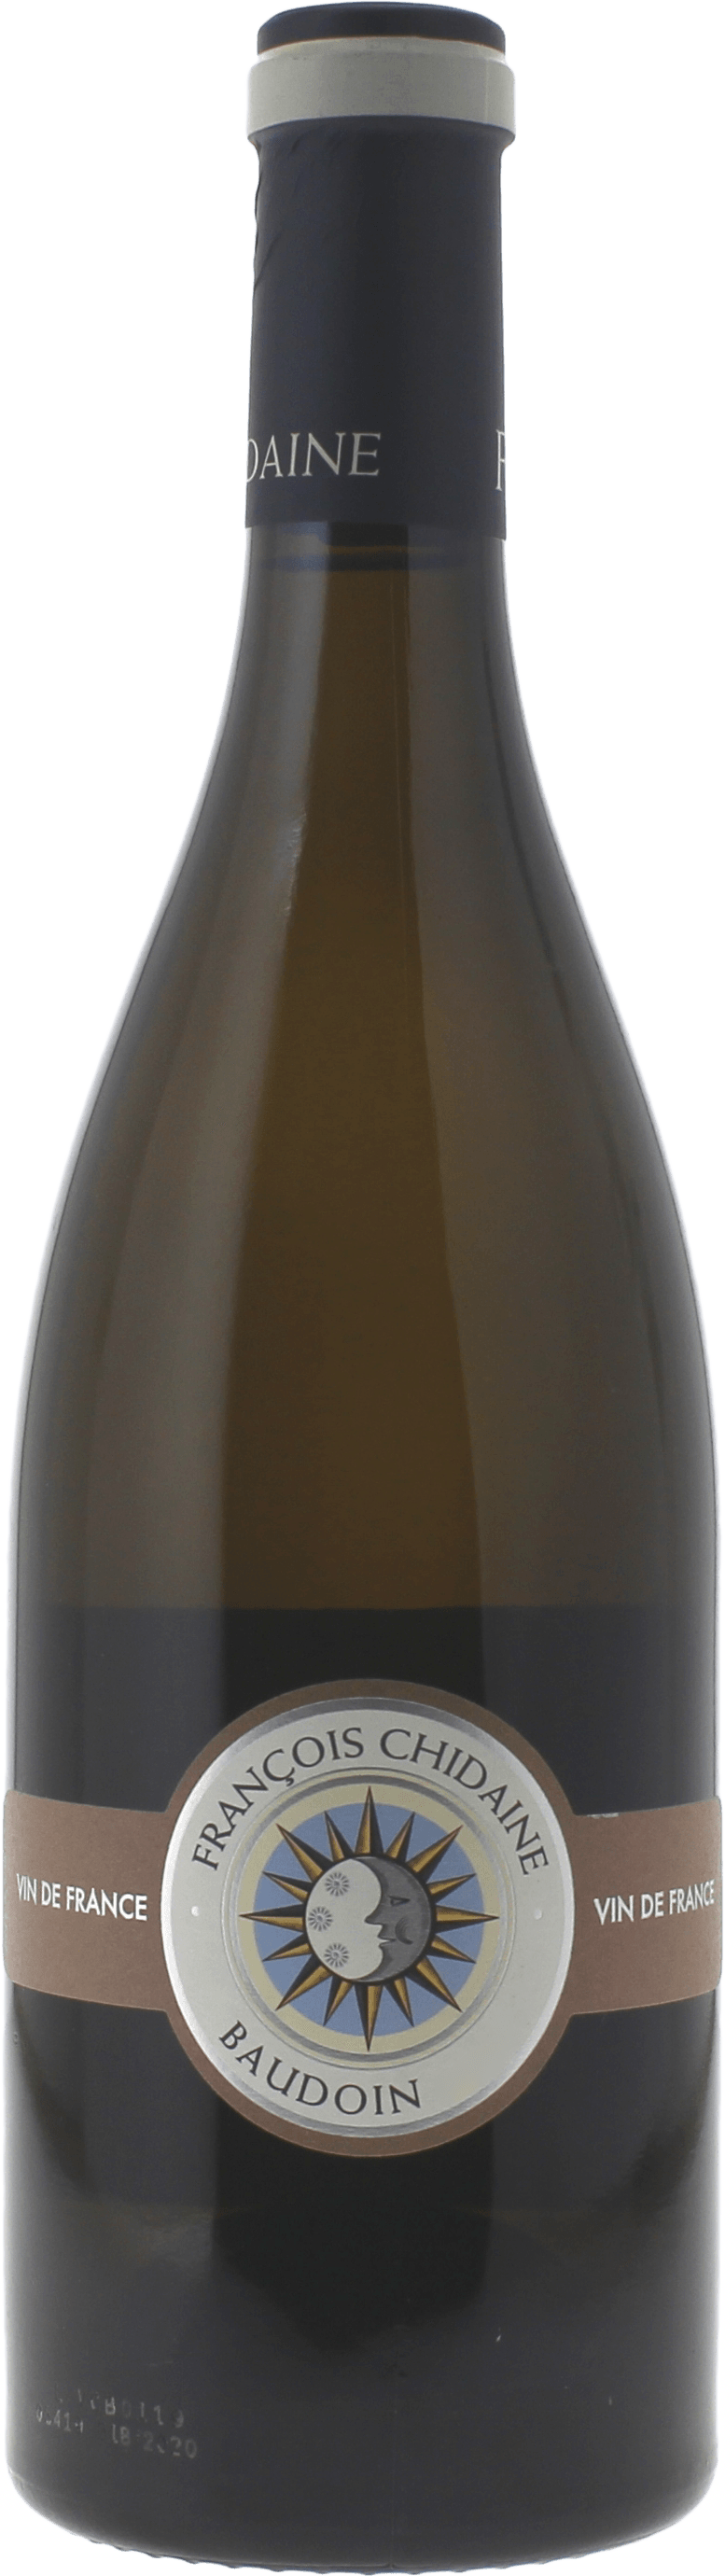 Baudoin domaine franois chidaine 2019  Vin de France, Valle de la Loire